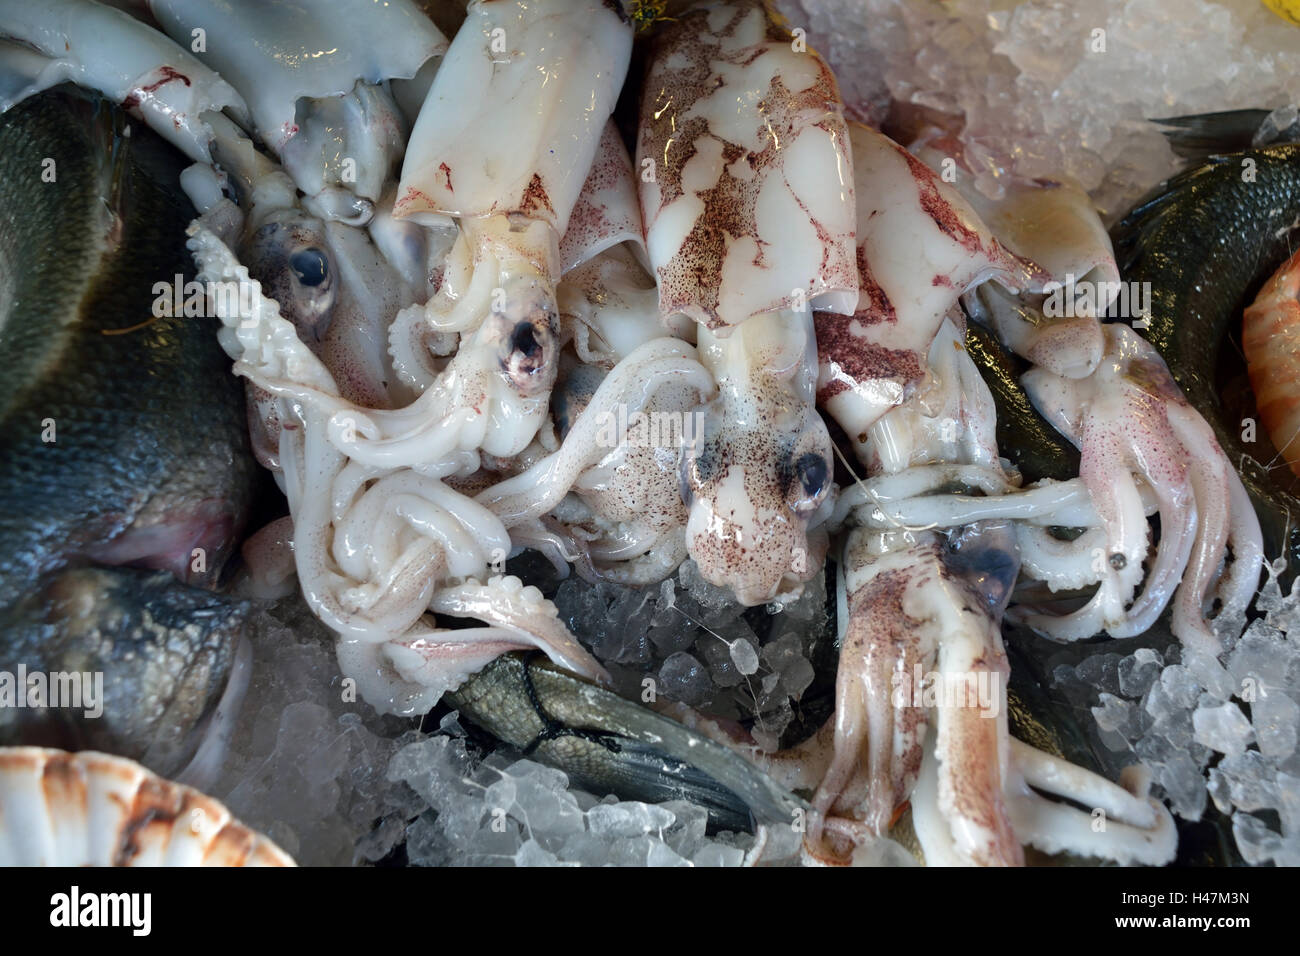 Fisch und Meeresfrüchte aus der Adria auf einem Fischmarkt am Rialto Brücke von Venedig in Italien. Stockfoto